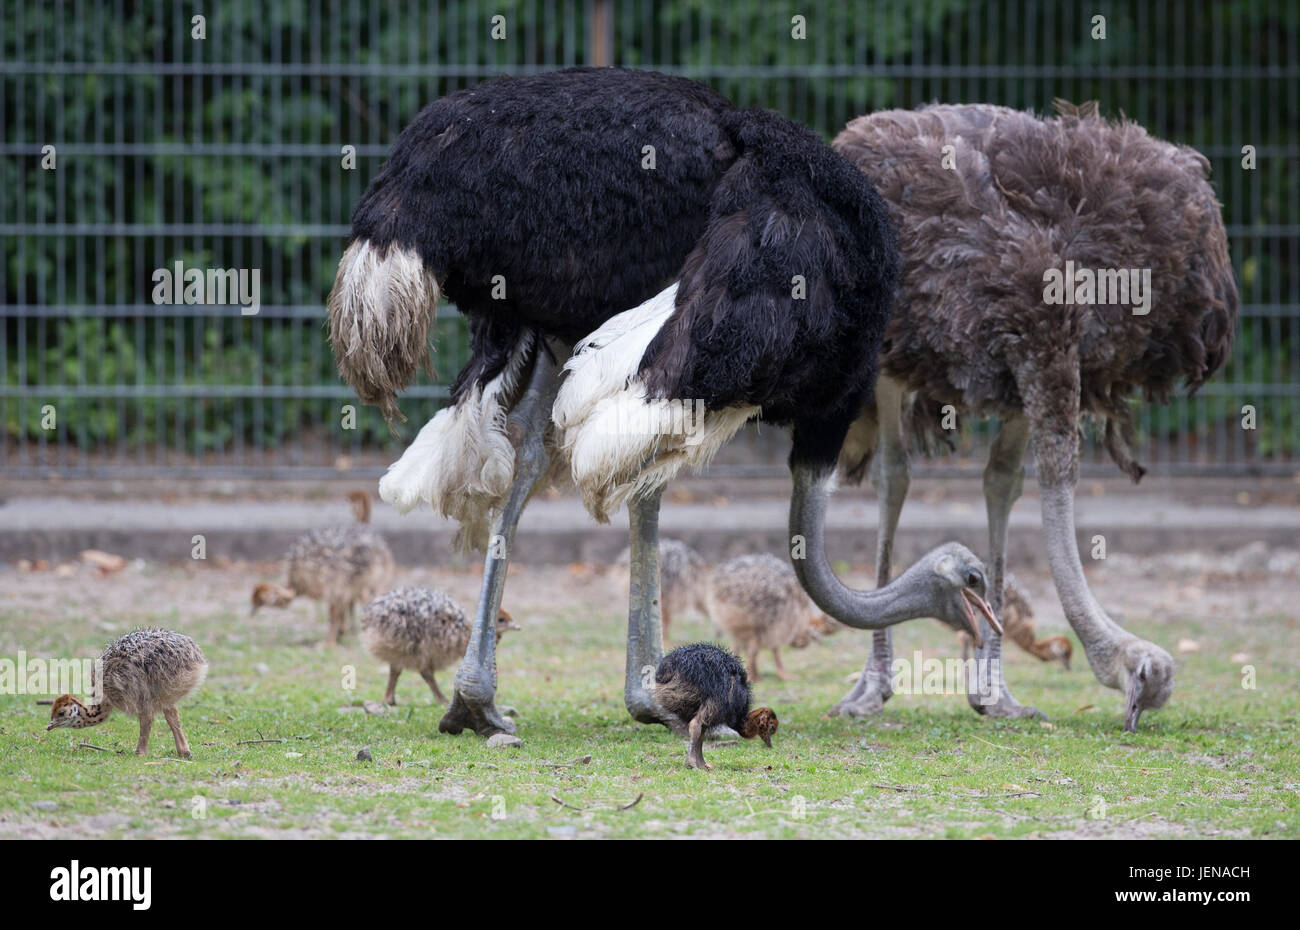 Muenster, Alemania. 27 de junio de 2017. "Ostrichs uenchi' (r) y 'Heinz' y sus pollitos recién nacidos pueden verse en un receptáculo no público en el zoológico en Muenster, Alemania, 27 de junio de 2017. Nueve polluelos nacieron a mediados de junio. Uno de los animales tiene plumas negras. Según el zoo, las plumas negras son un raro trastorno de color. Foto: Friso Gentsch/dpa/Alamy Live News Foto de stock